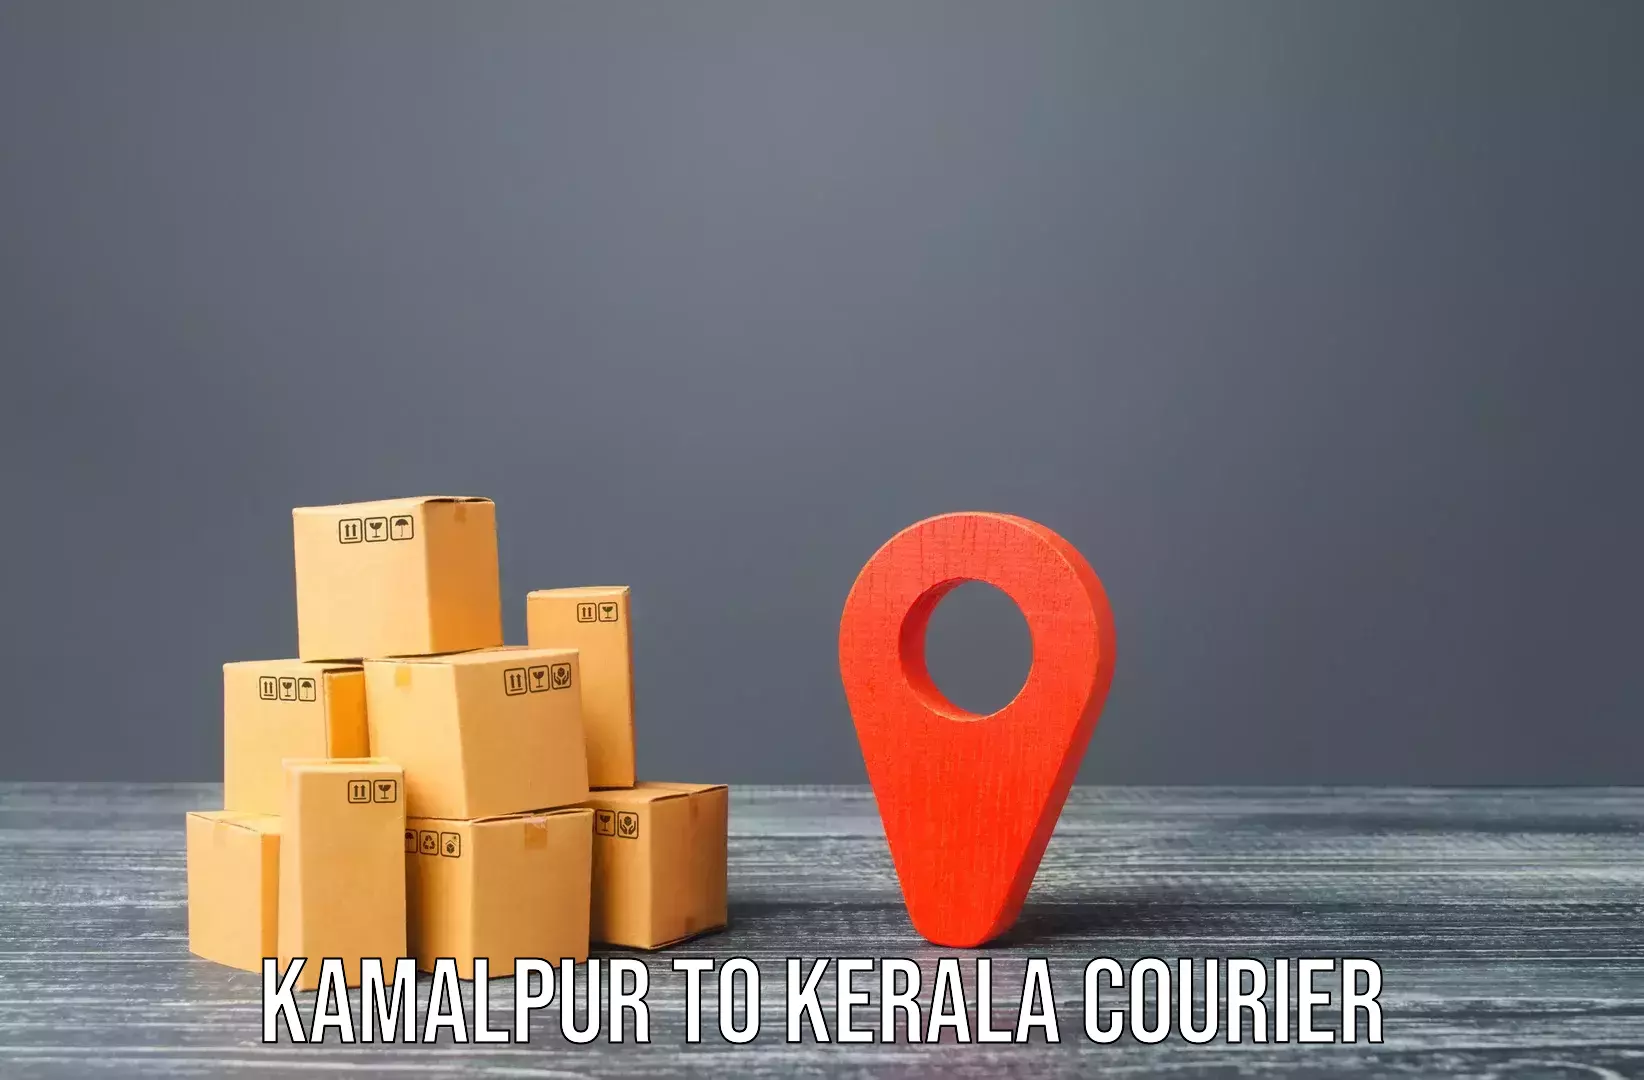 Efficient moving company Kamalpur to Kumily